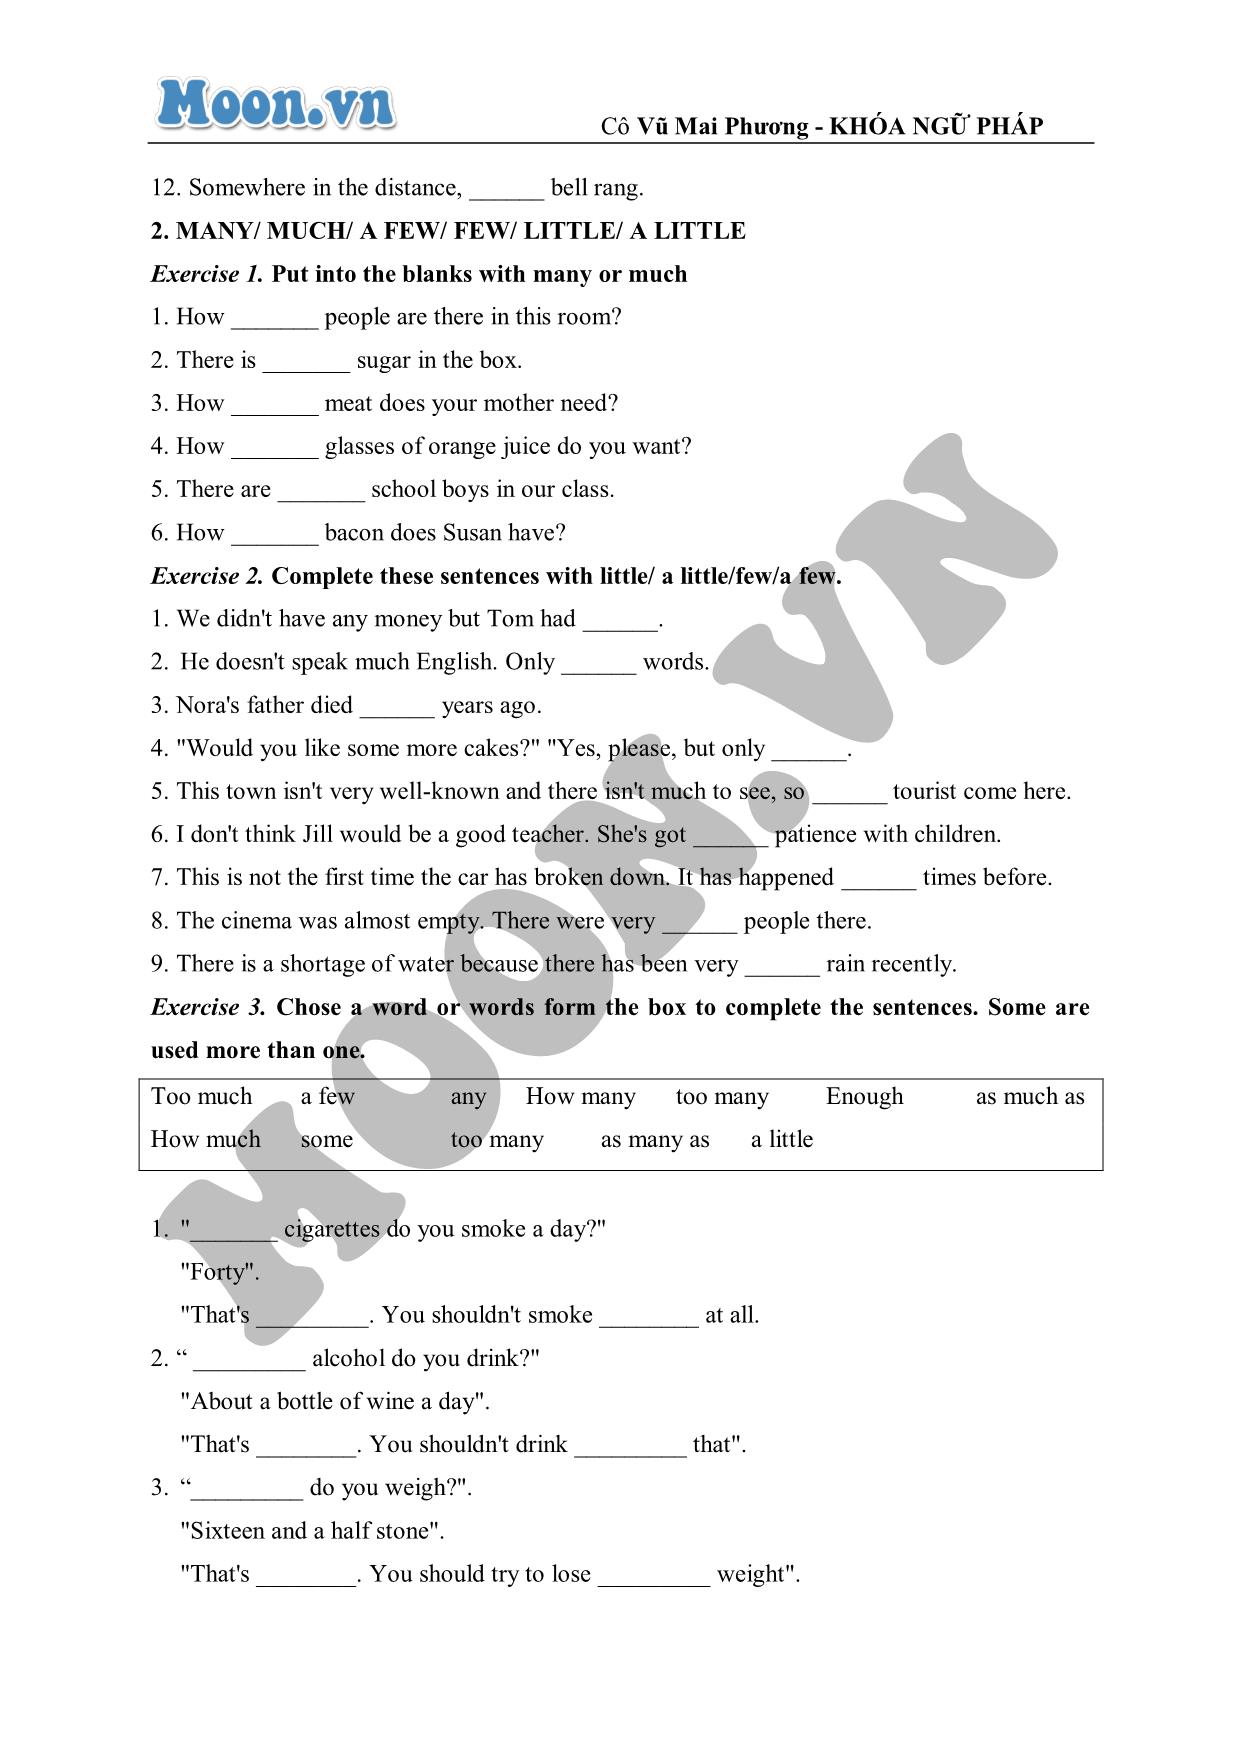 Bài luyện tập nâng cao về mạo từ (exercises) trang 5